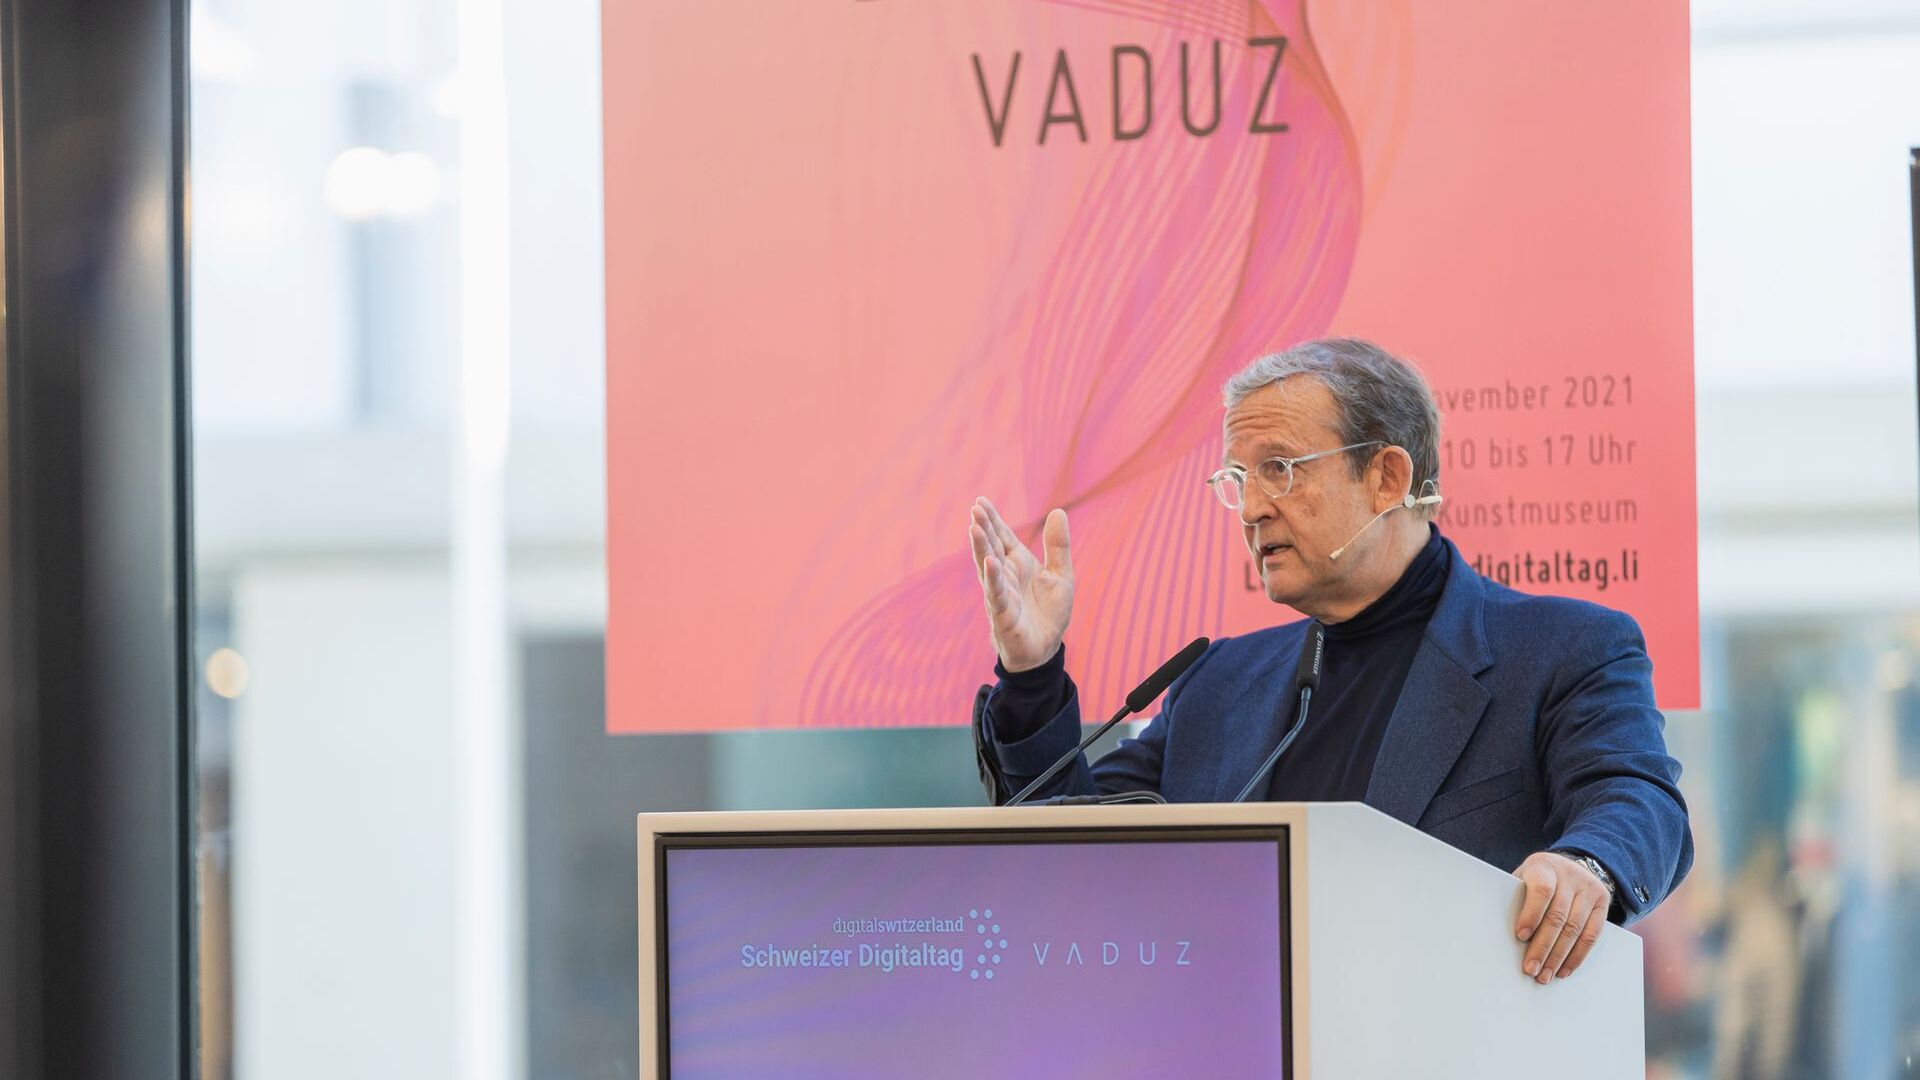 El "Digitaltag Vaduz" fue recibido por el Kunstmuseum de la capital del Principado de Liechtenstein el sábado 6 de noviembre de 2021: el discurso de Fritz Kaiser, presidente y propietario de Kaiser Partner